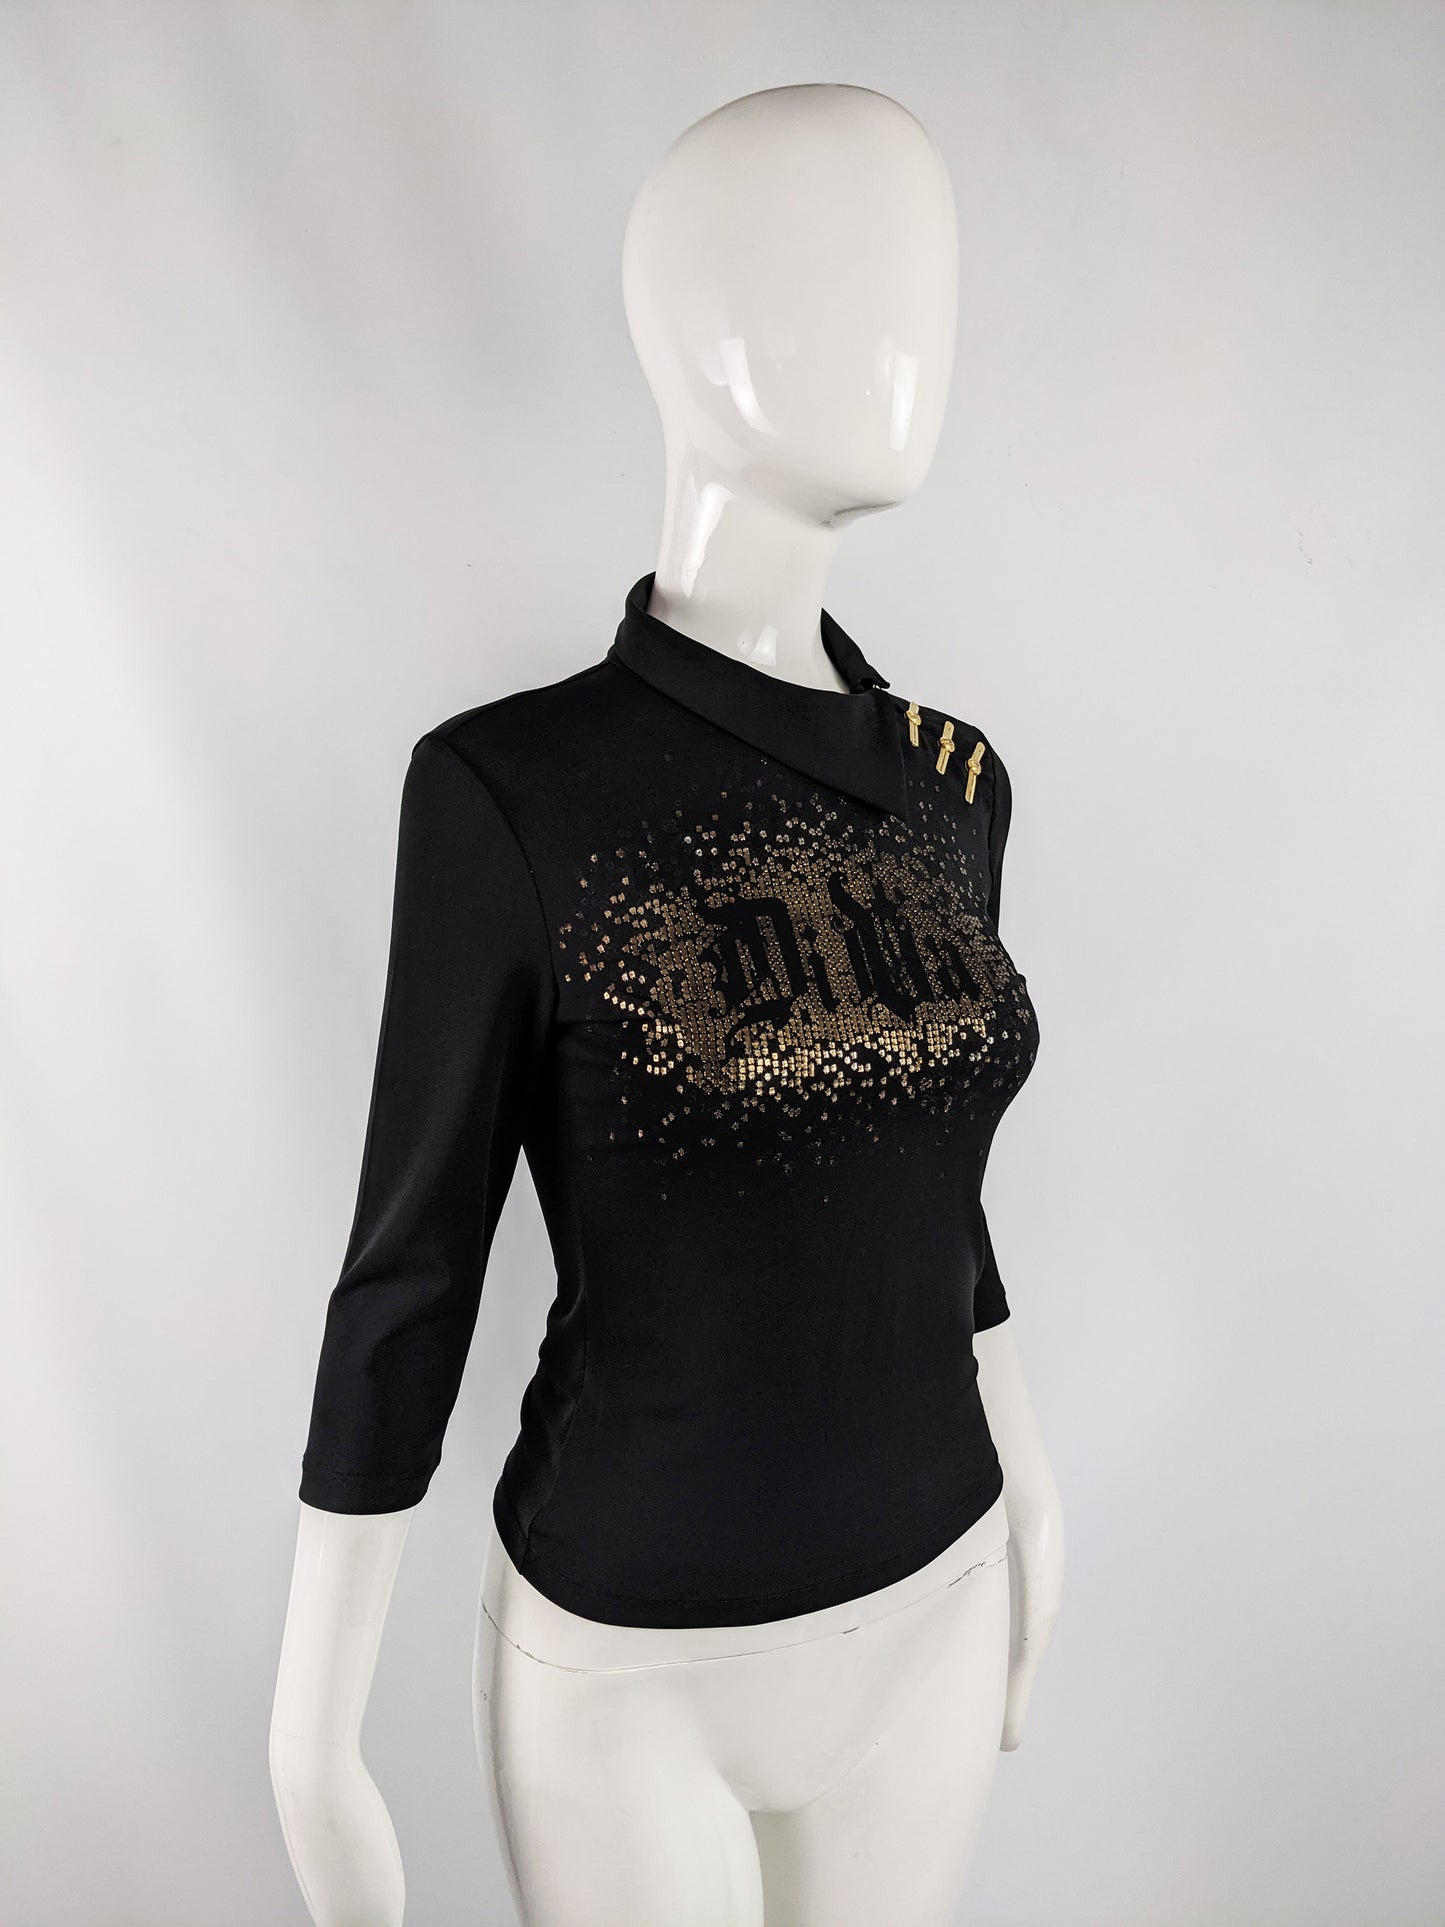 Versace Vintage Black & Gold 'Diva' Shirt, 2000s